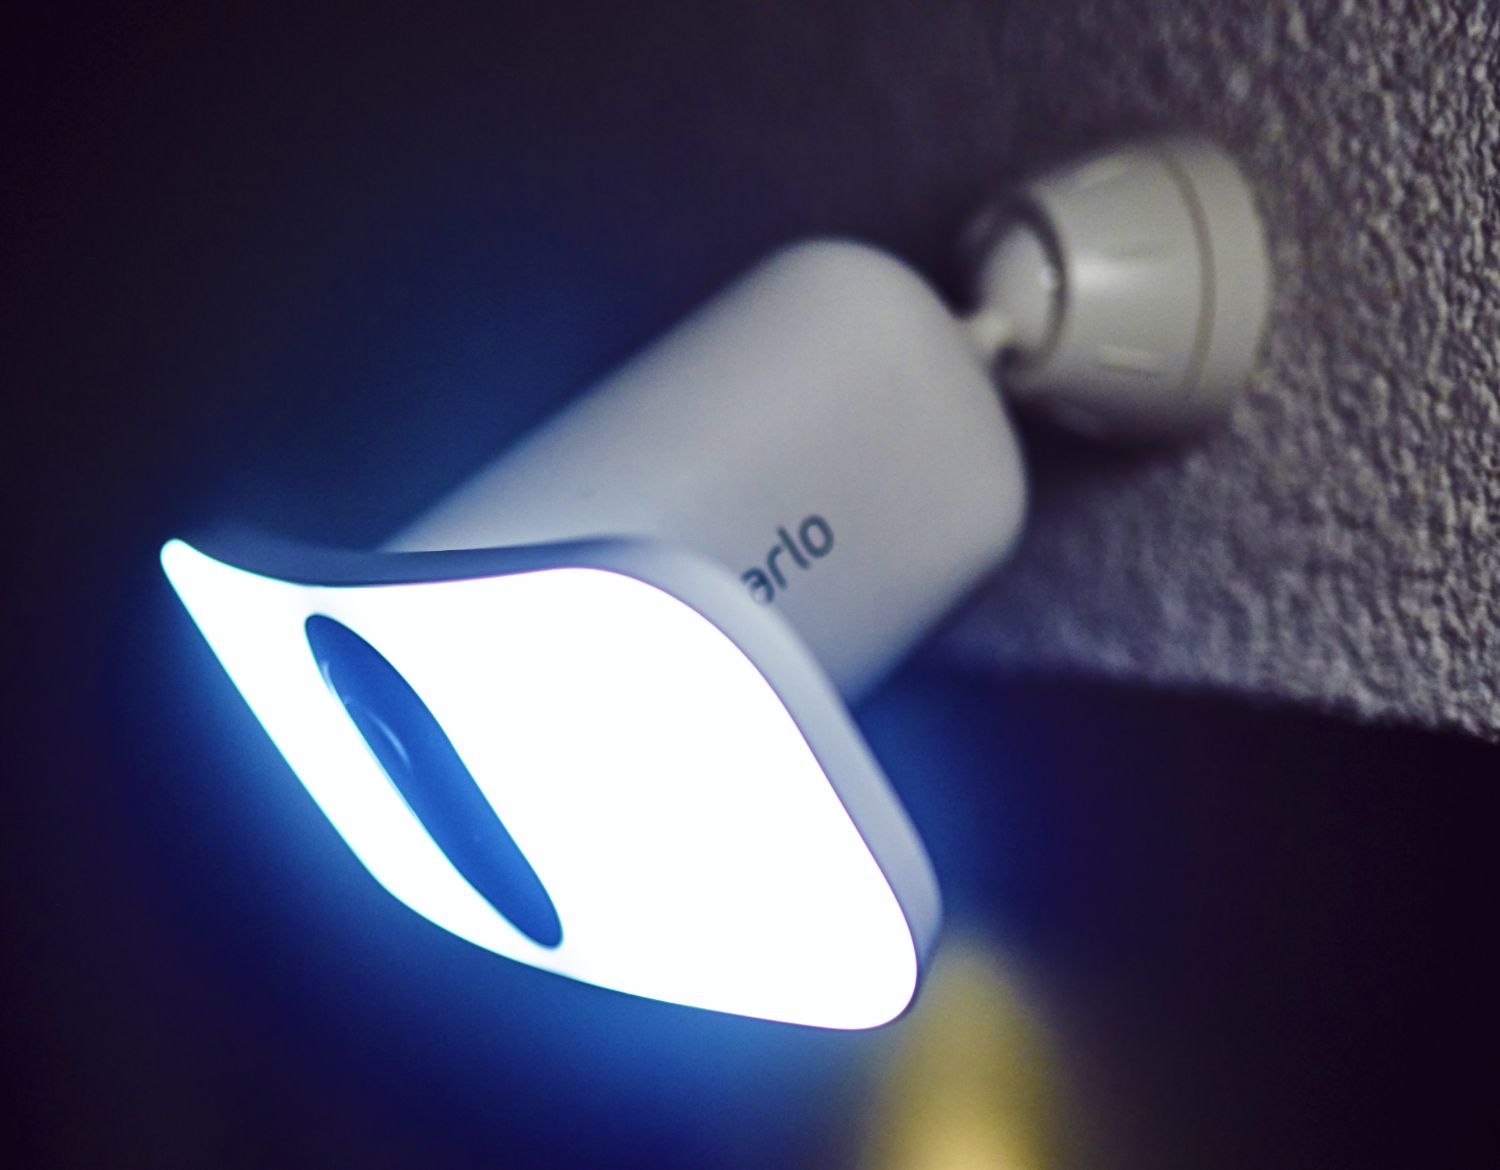 En Arlo Floodlight-kamera lyser upp din fastighet med 3000 lumen ljus som är ljusare än en bilstrålkastare